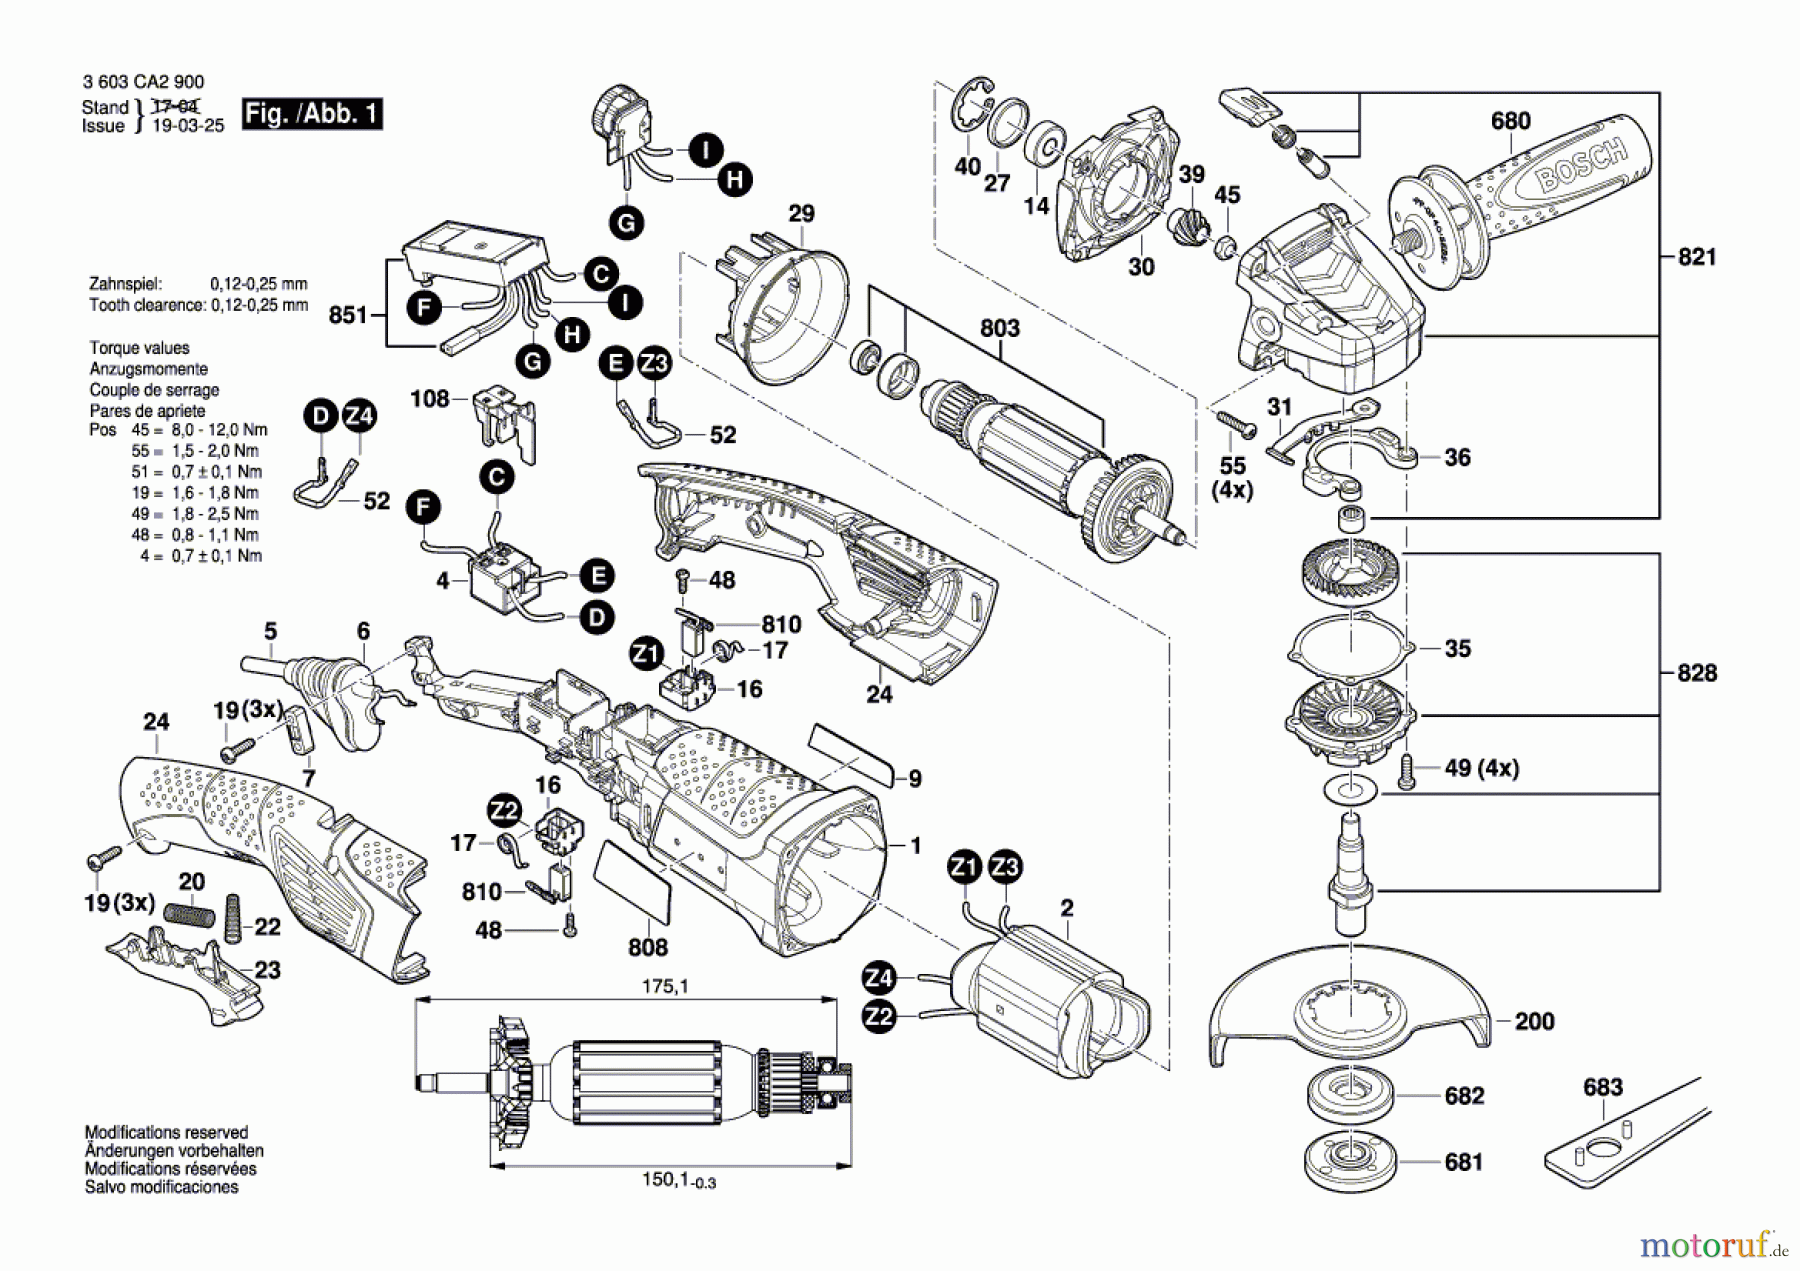  Bosch Werkzeug Winkelschleifer PWS 1300-125 CE Seite 1